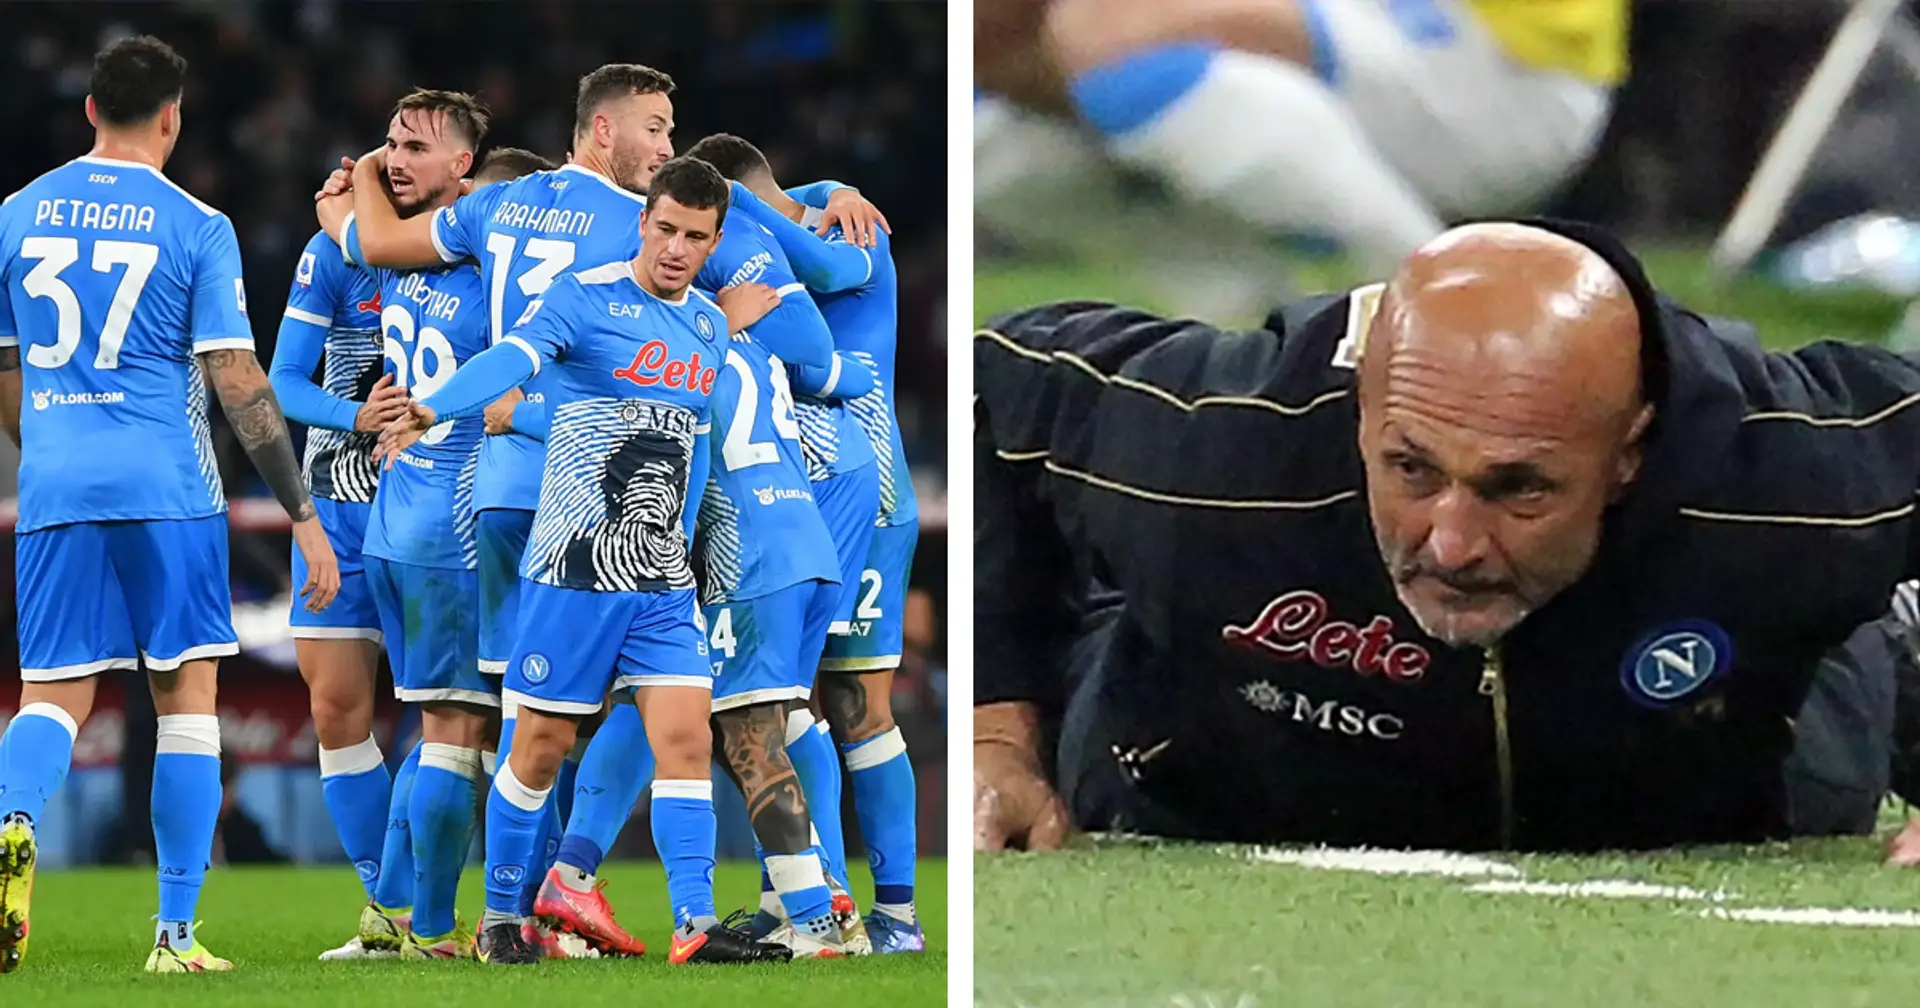 Buone notizie per il Milan: Napoli senza 3 titolarissimi contro i rossoneri